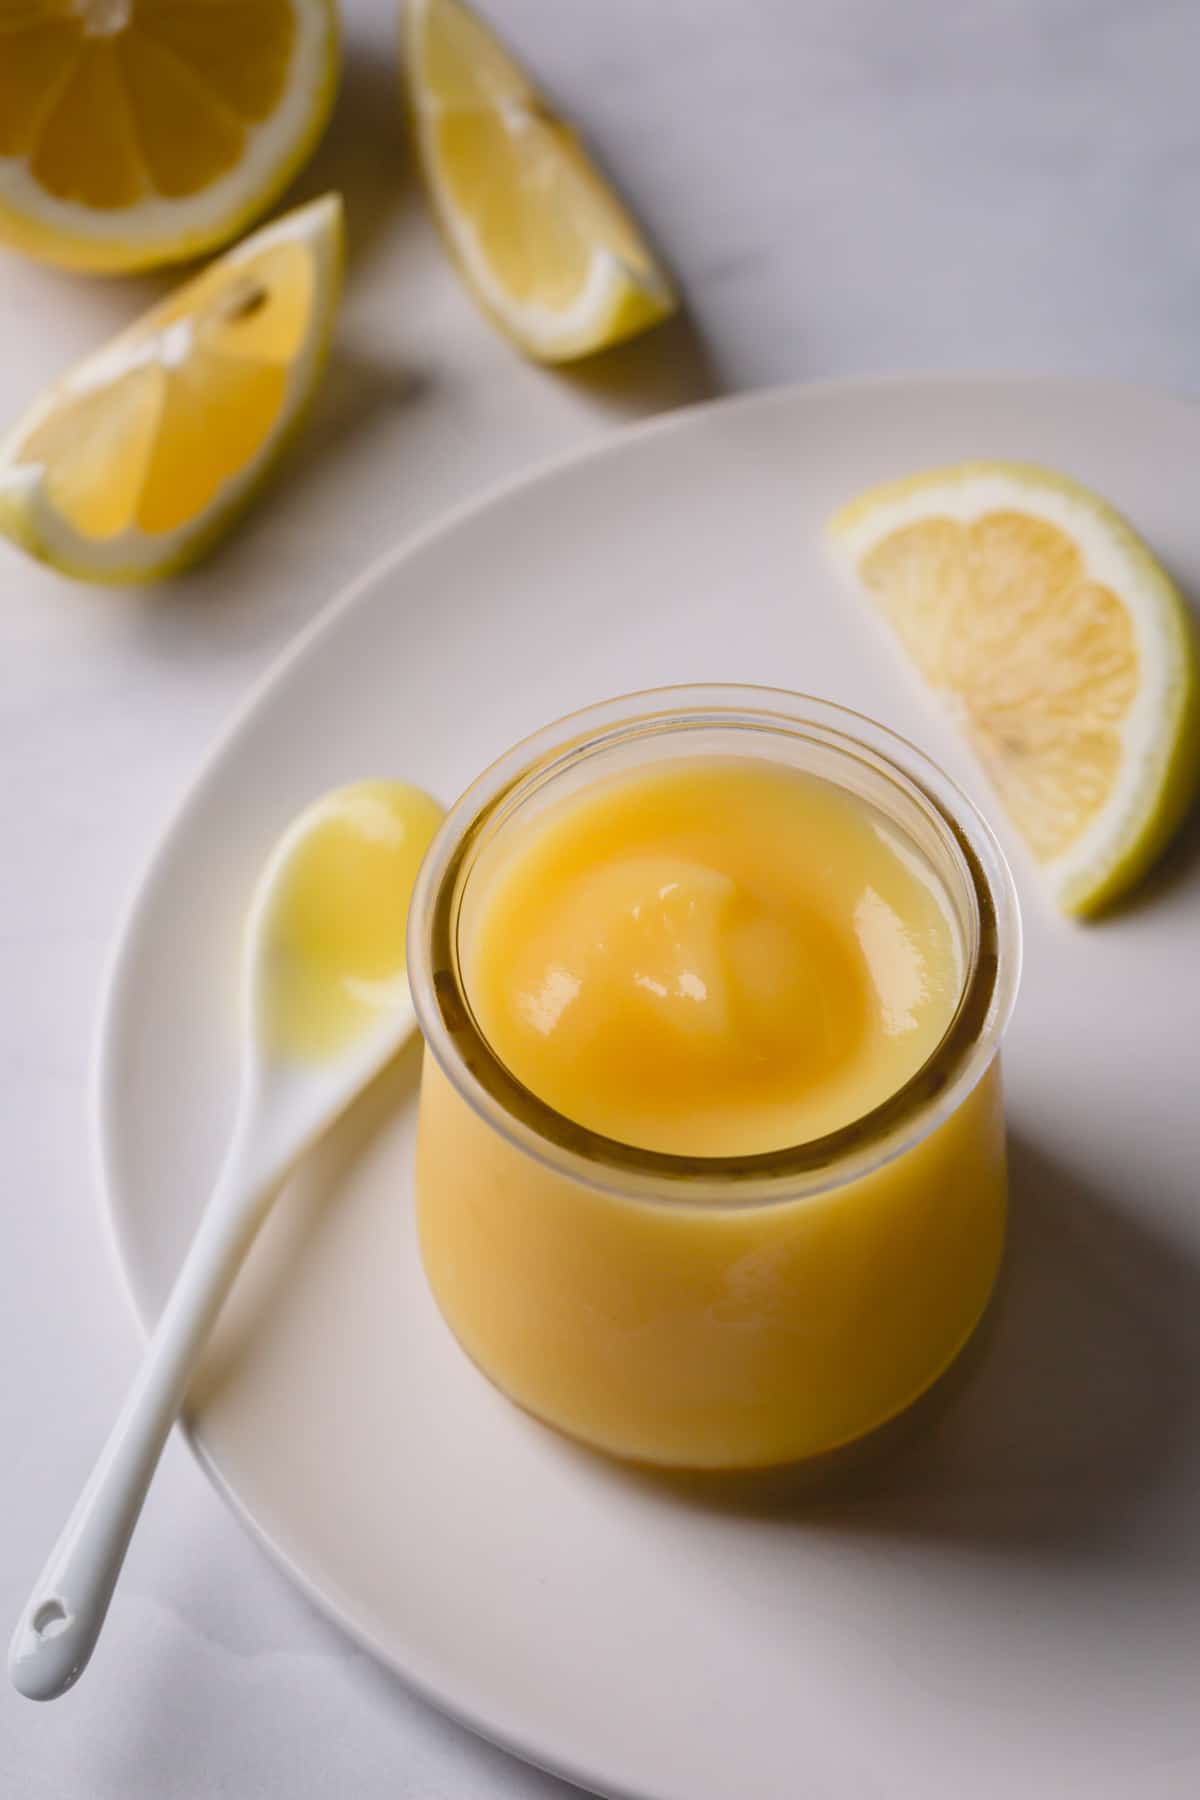 Creamy lemon curd in a glass jar.